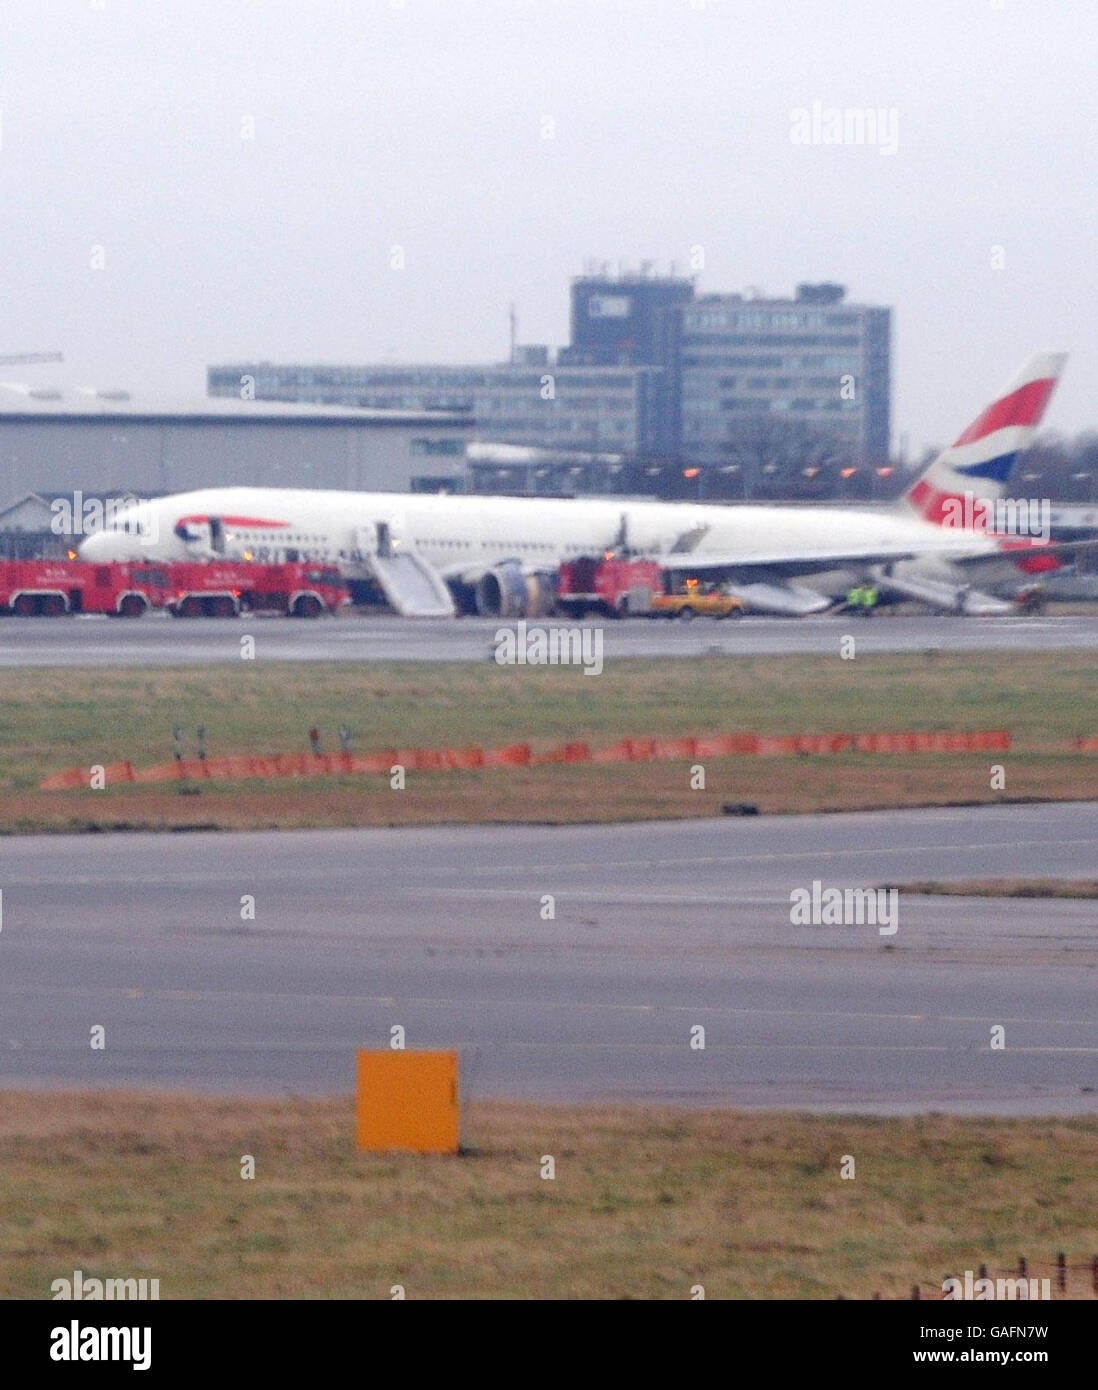 Ein Flugzeug von British Airways, das aus China hereinfliegt und kurz vor der Start- und Landebahn am Flughafen Heathrow landete. Stockfoto